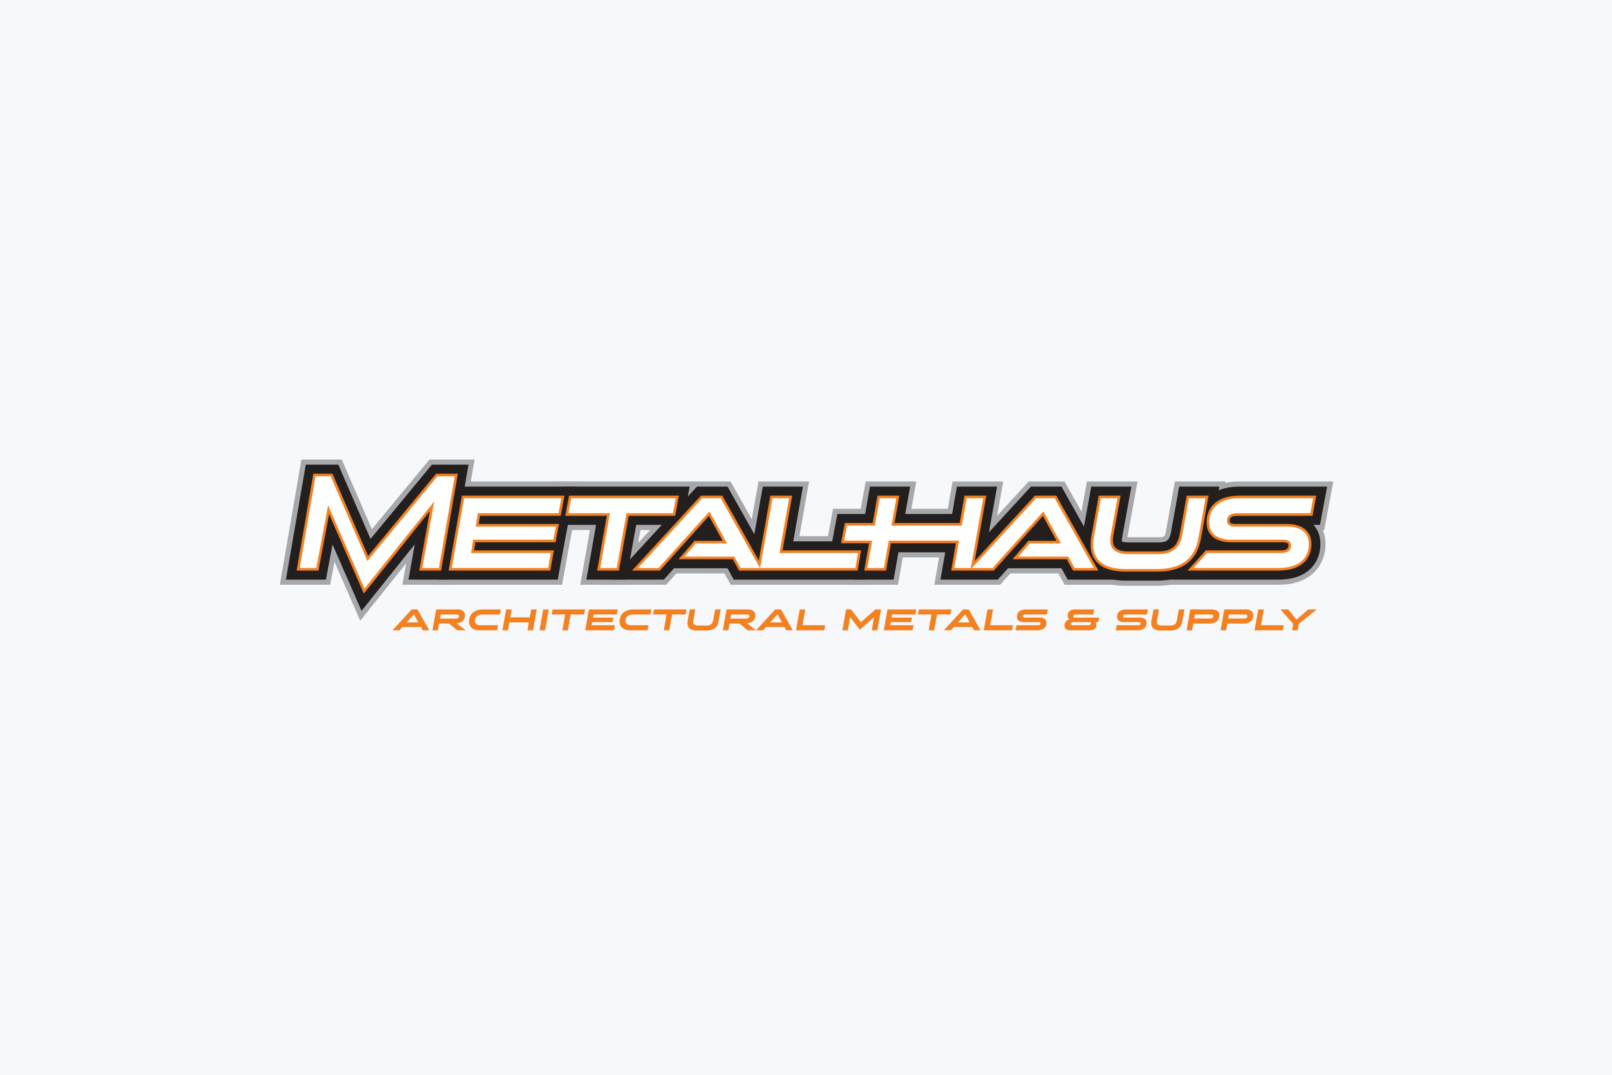 metalhaus logo design